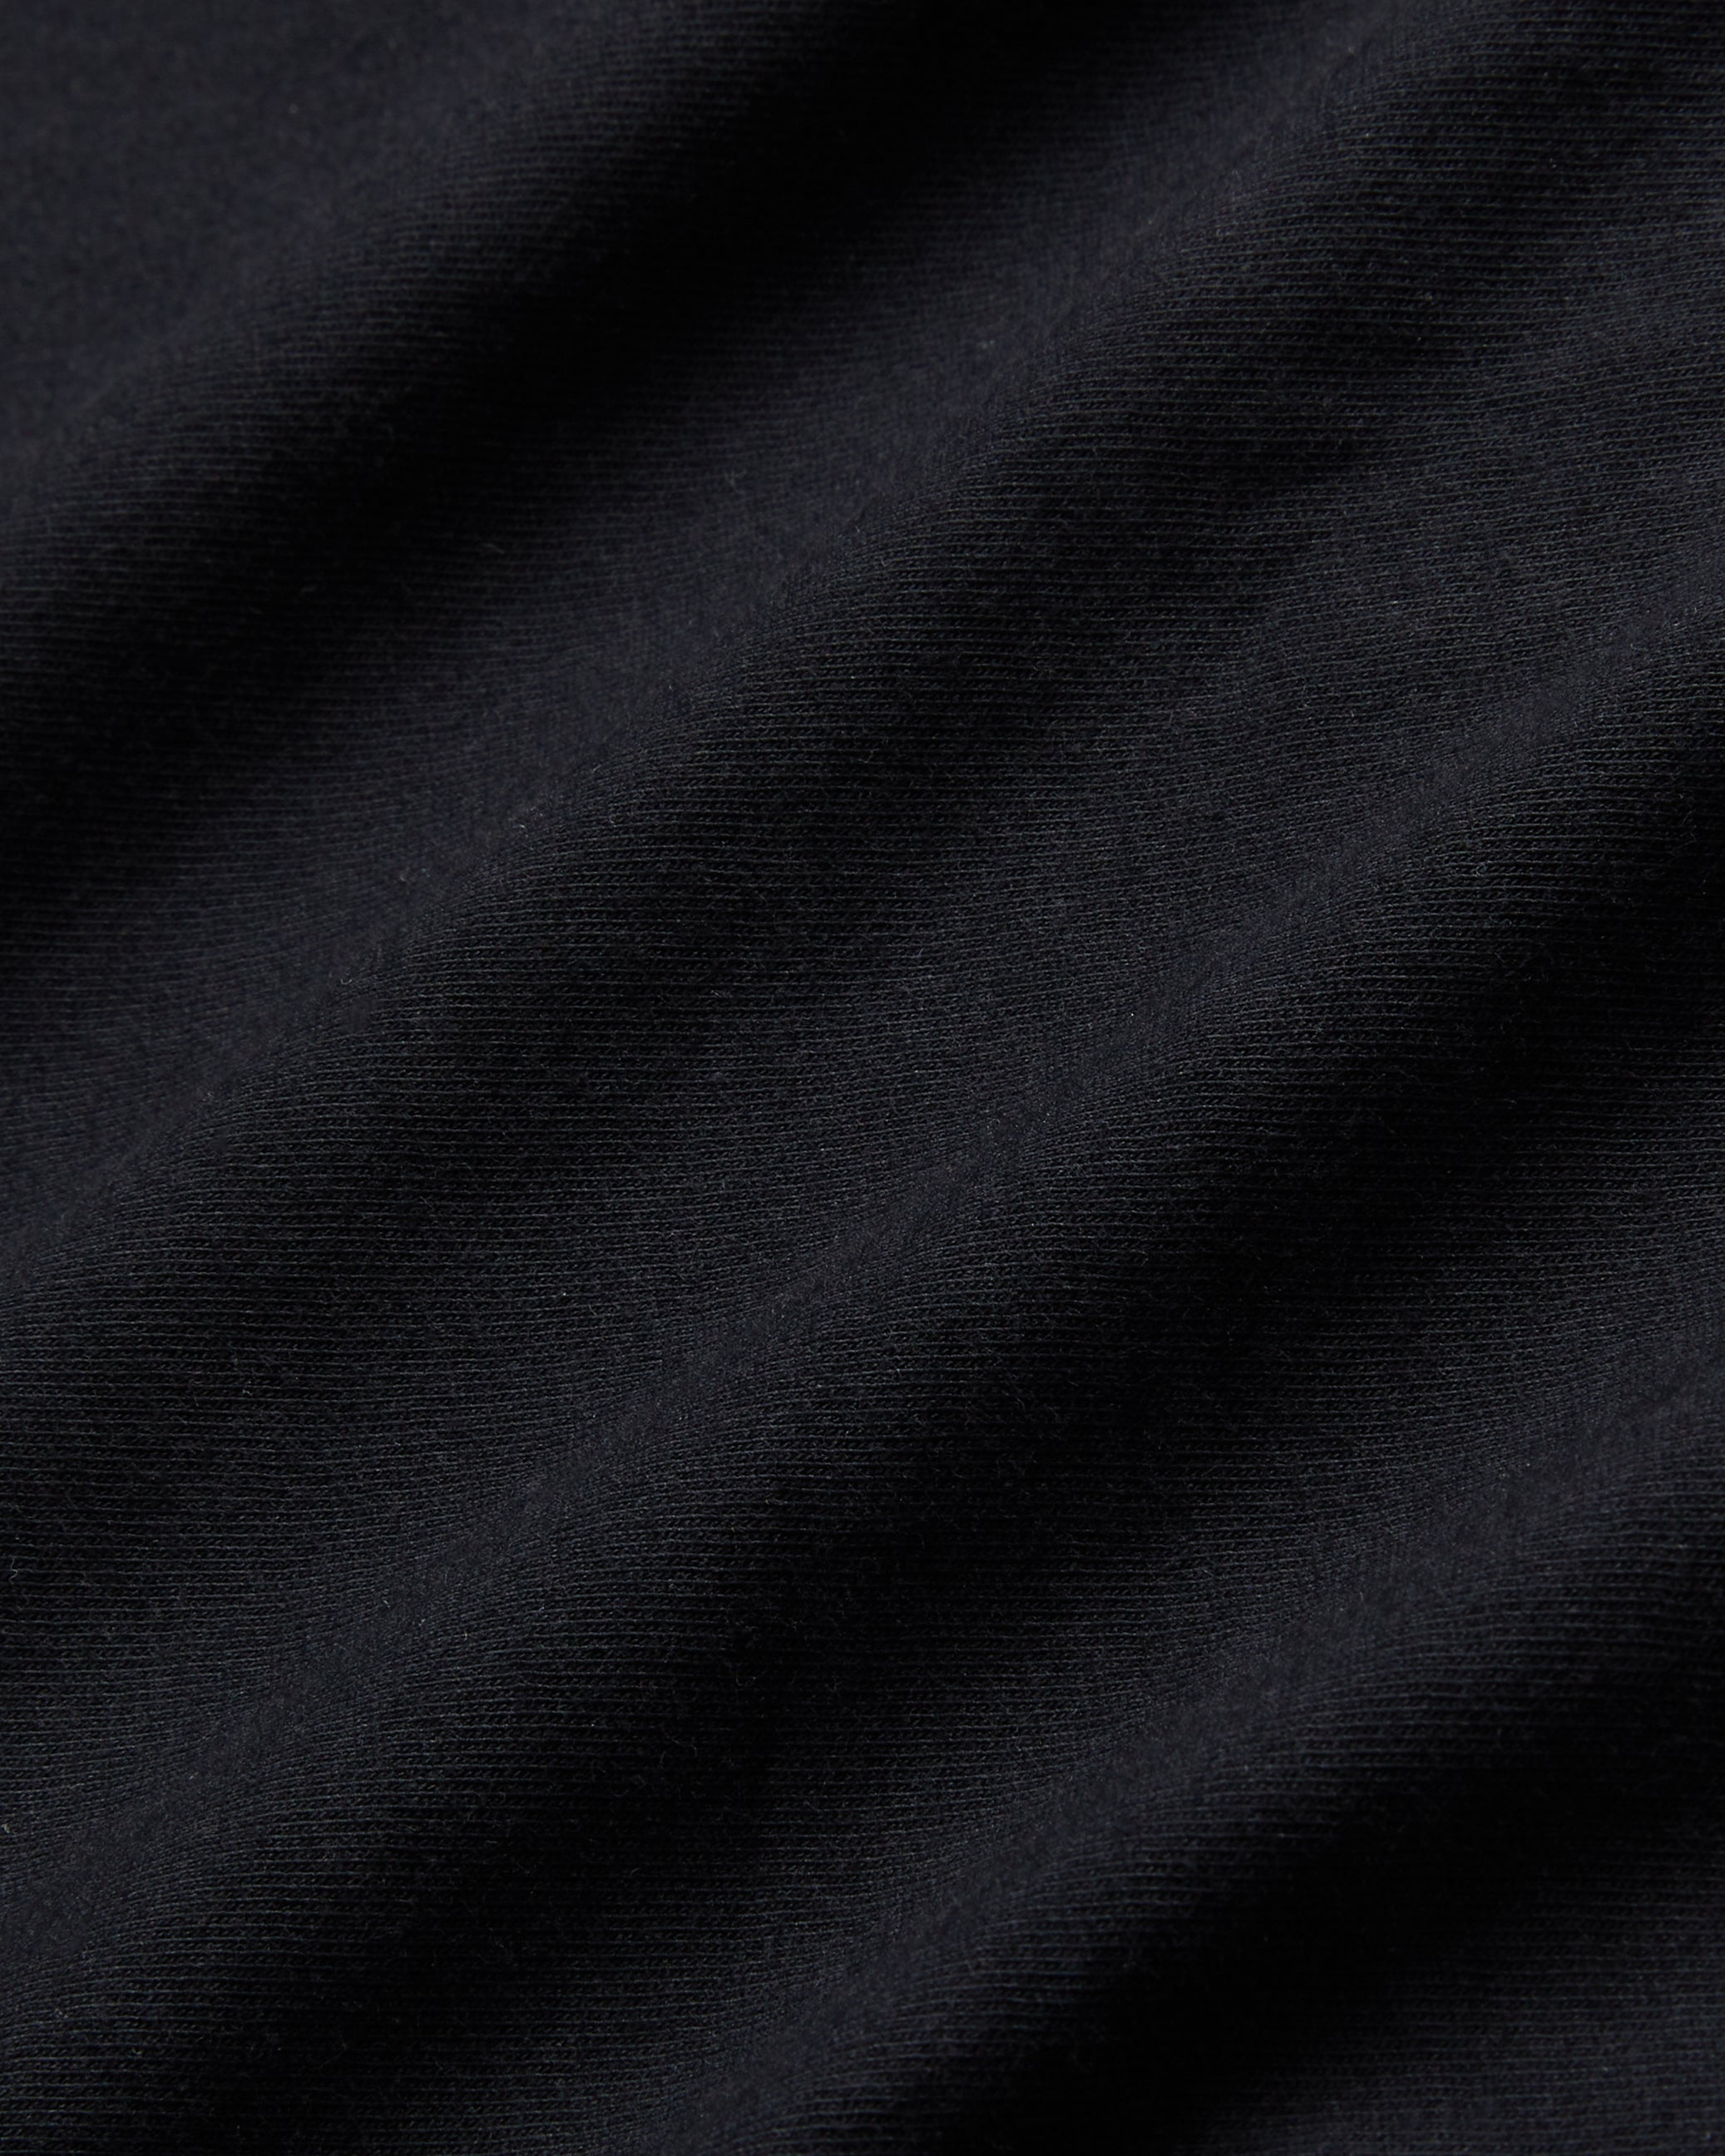 Wiskin Branded Regular Fit T-Shirt Black